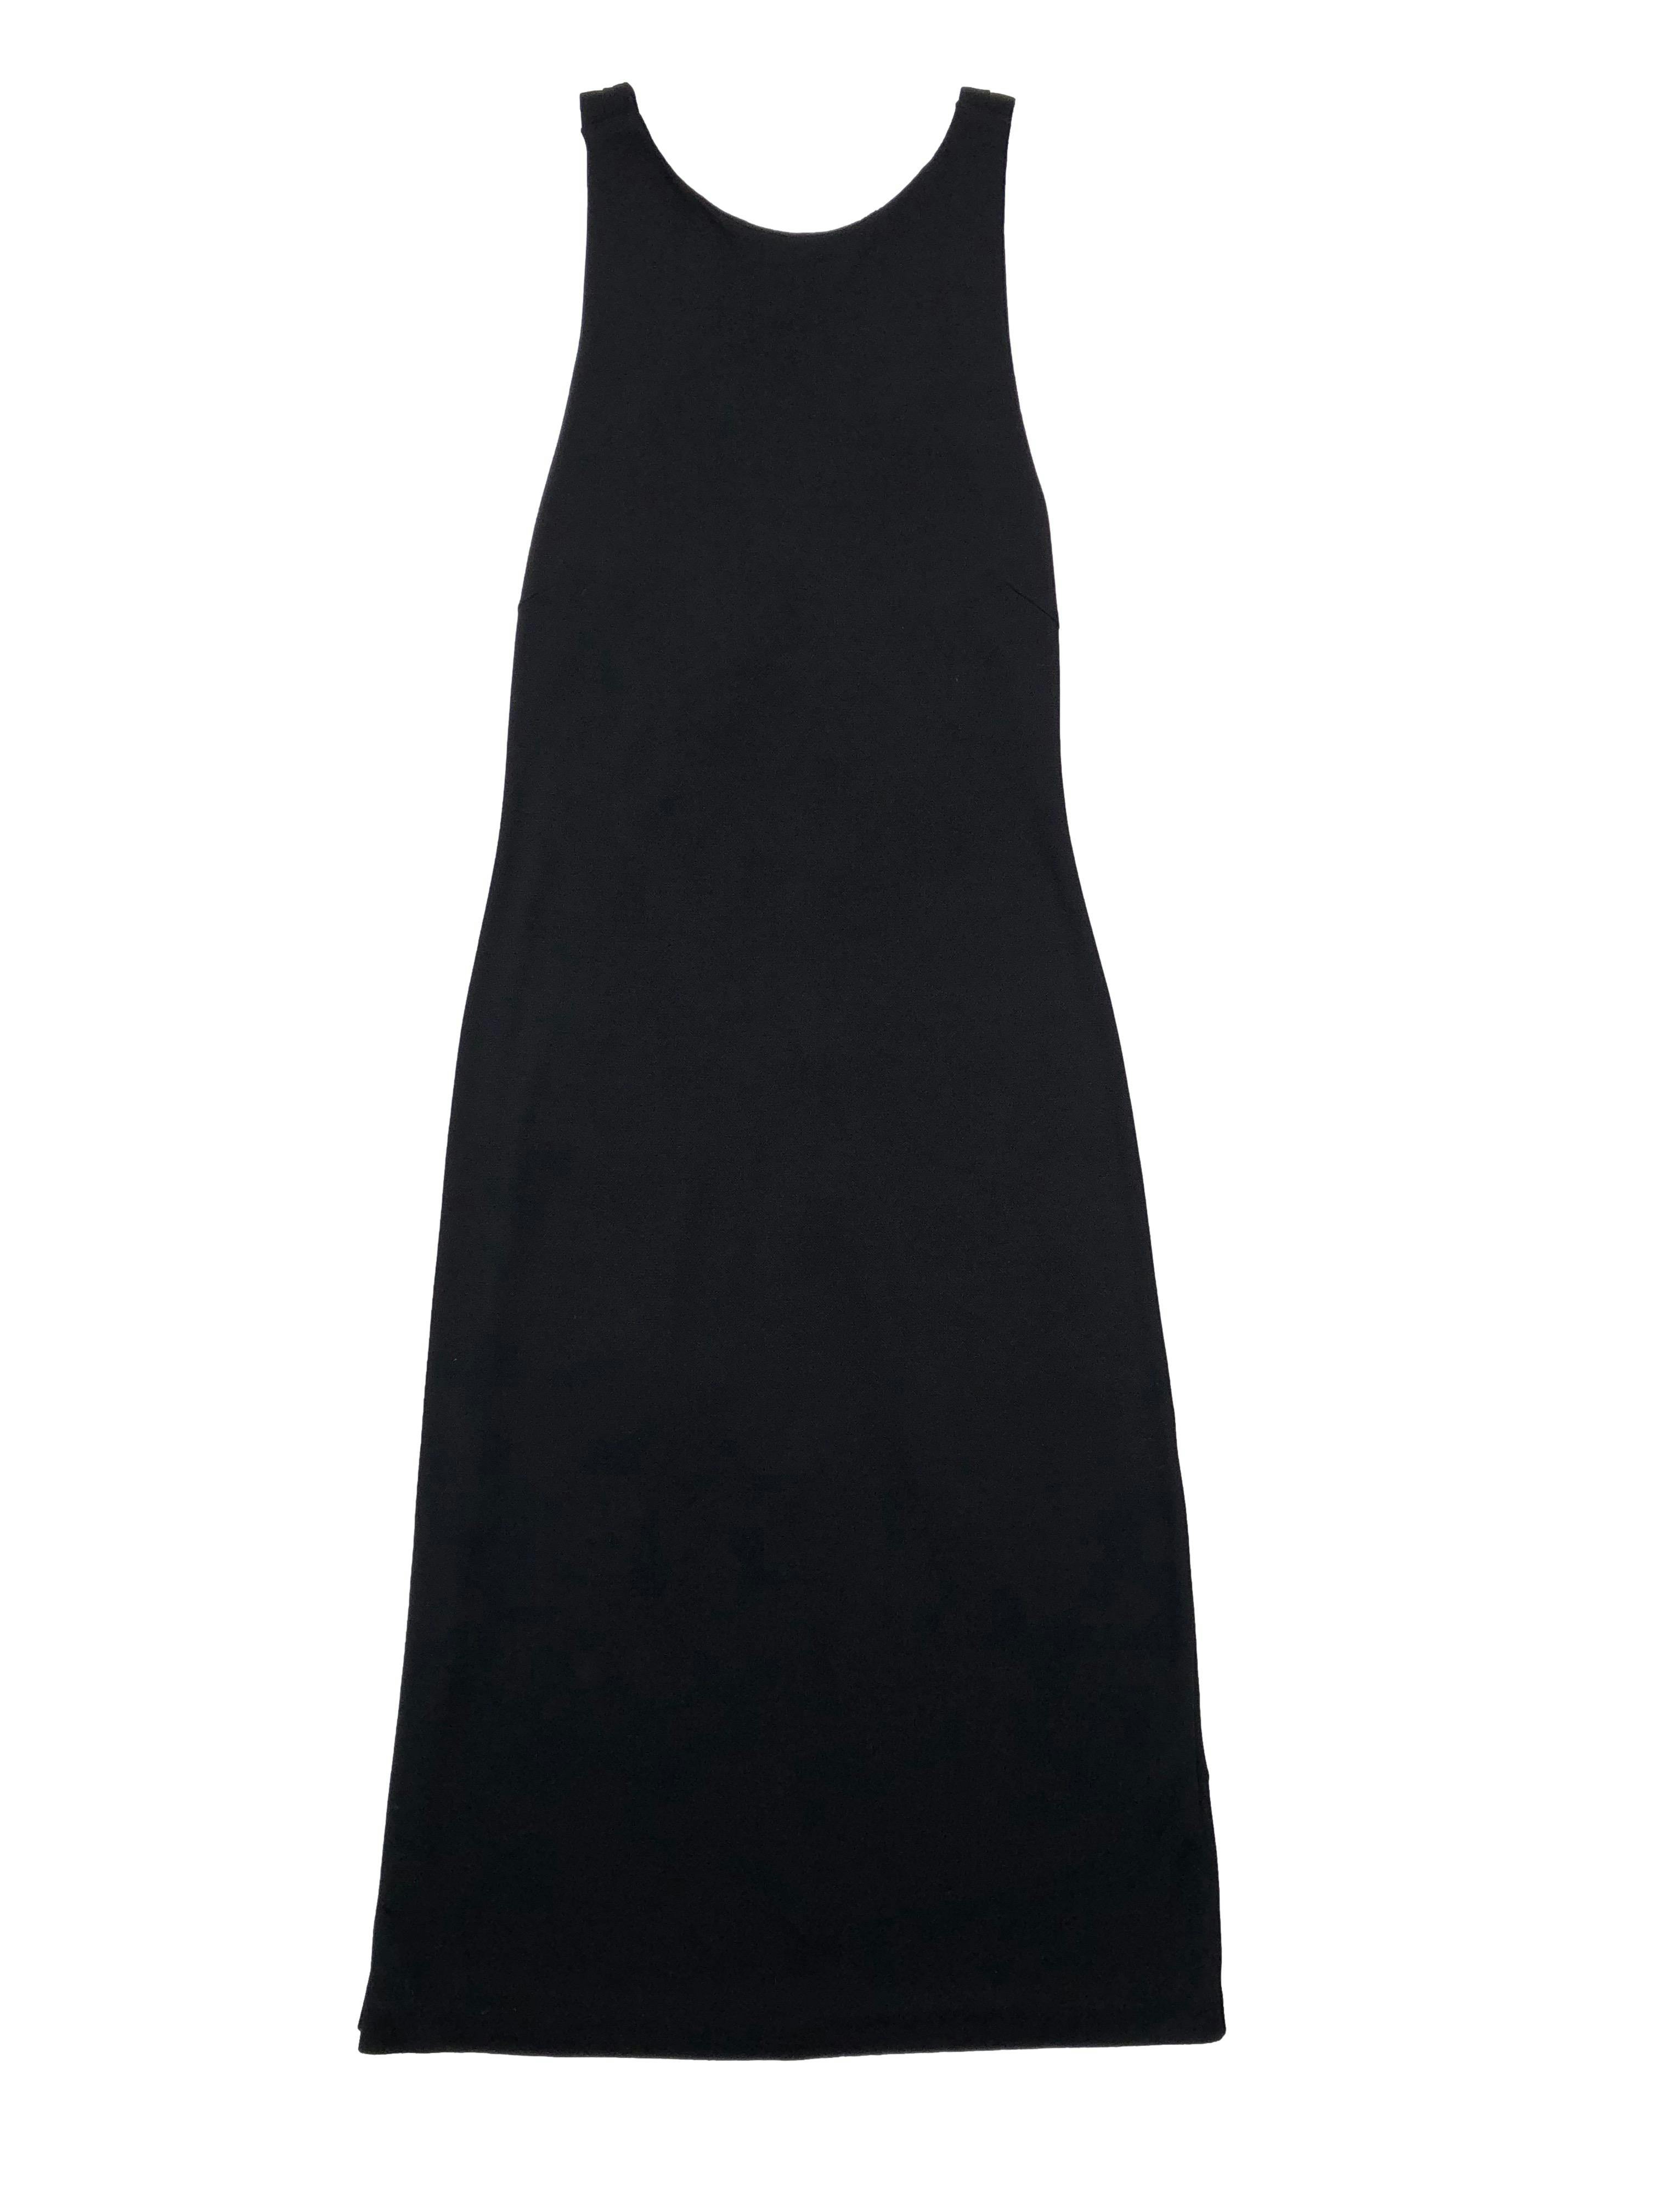 Vestido negro Lauren Ralph Lauren, tela stretch con forro en la parte superior y cruce en espalda. Talla L en etiqueta, precio original S/.489. Busto 90cm sin estirar, largo 108cm.